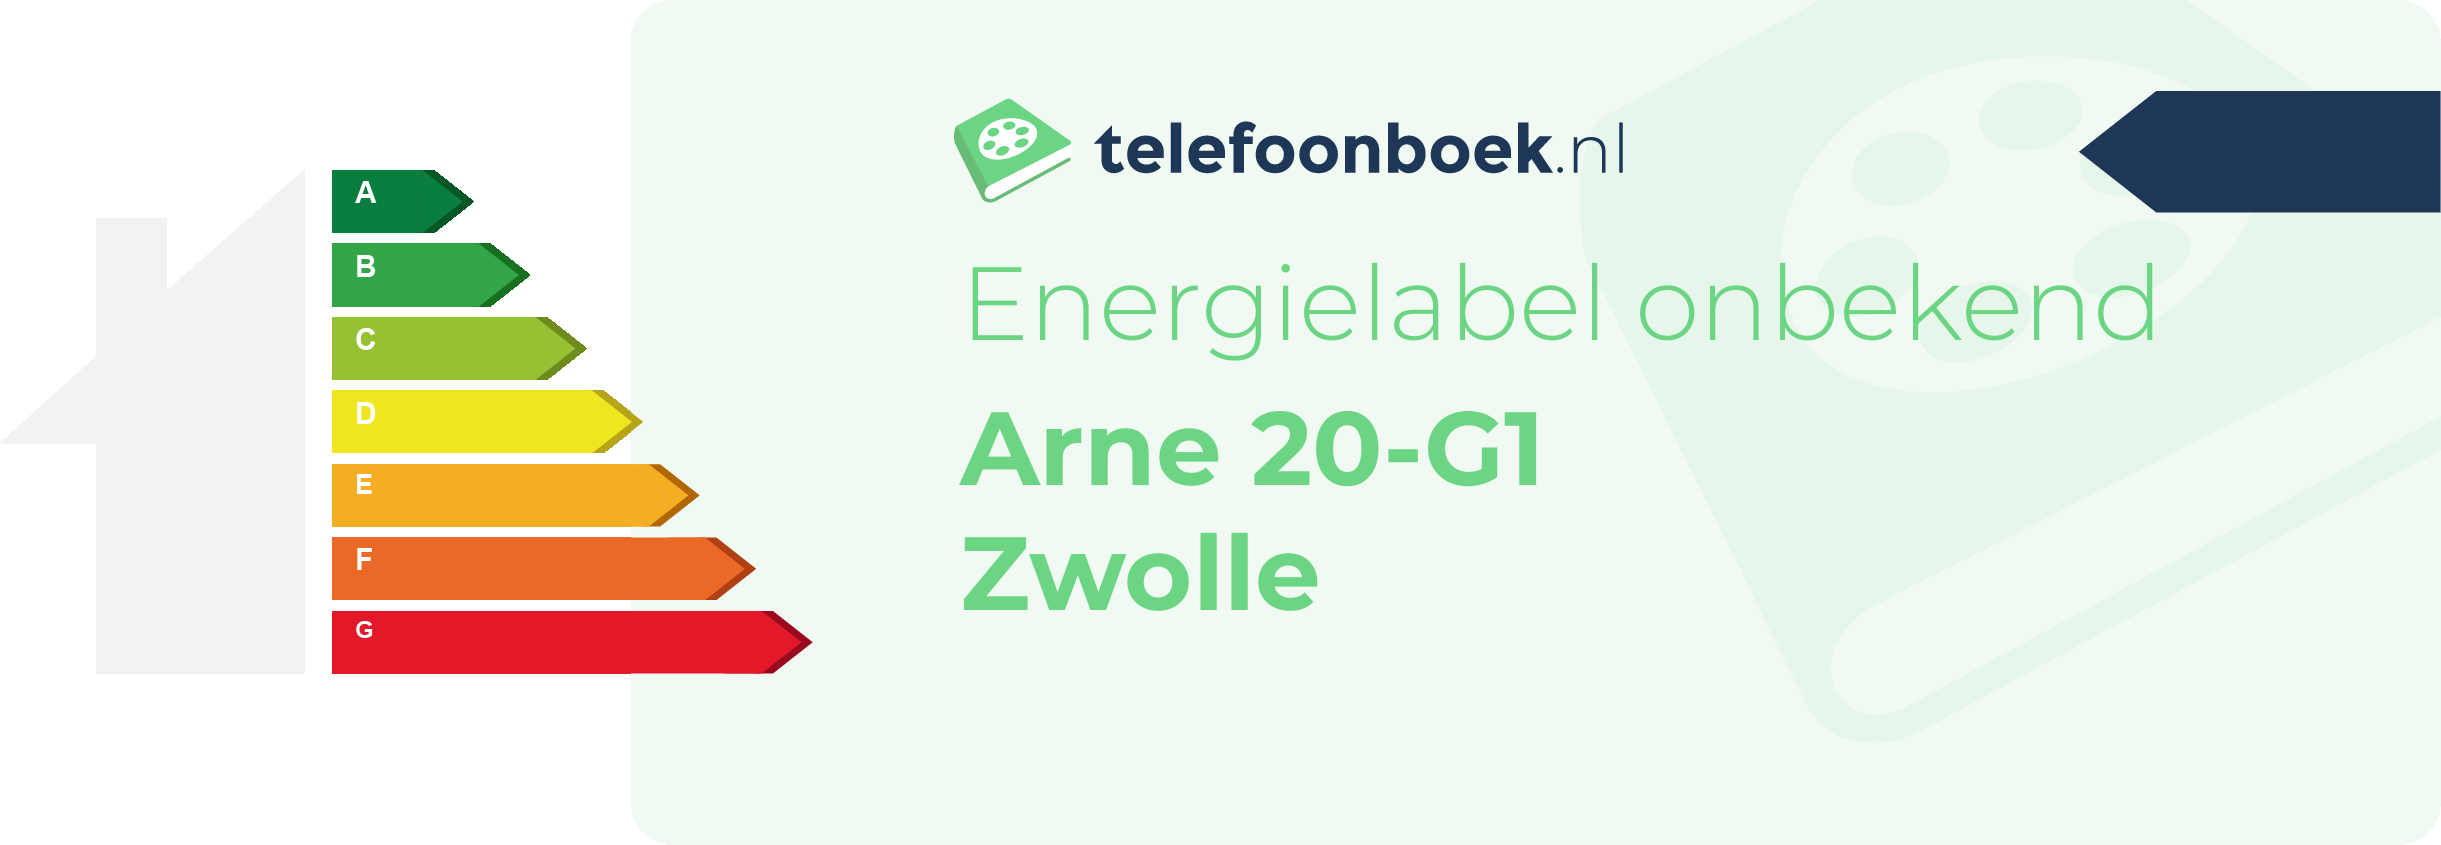 Energielabel Arne 20-G1 Zwolle